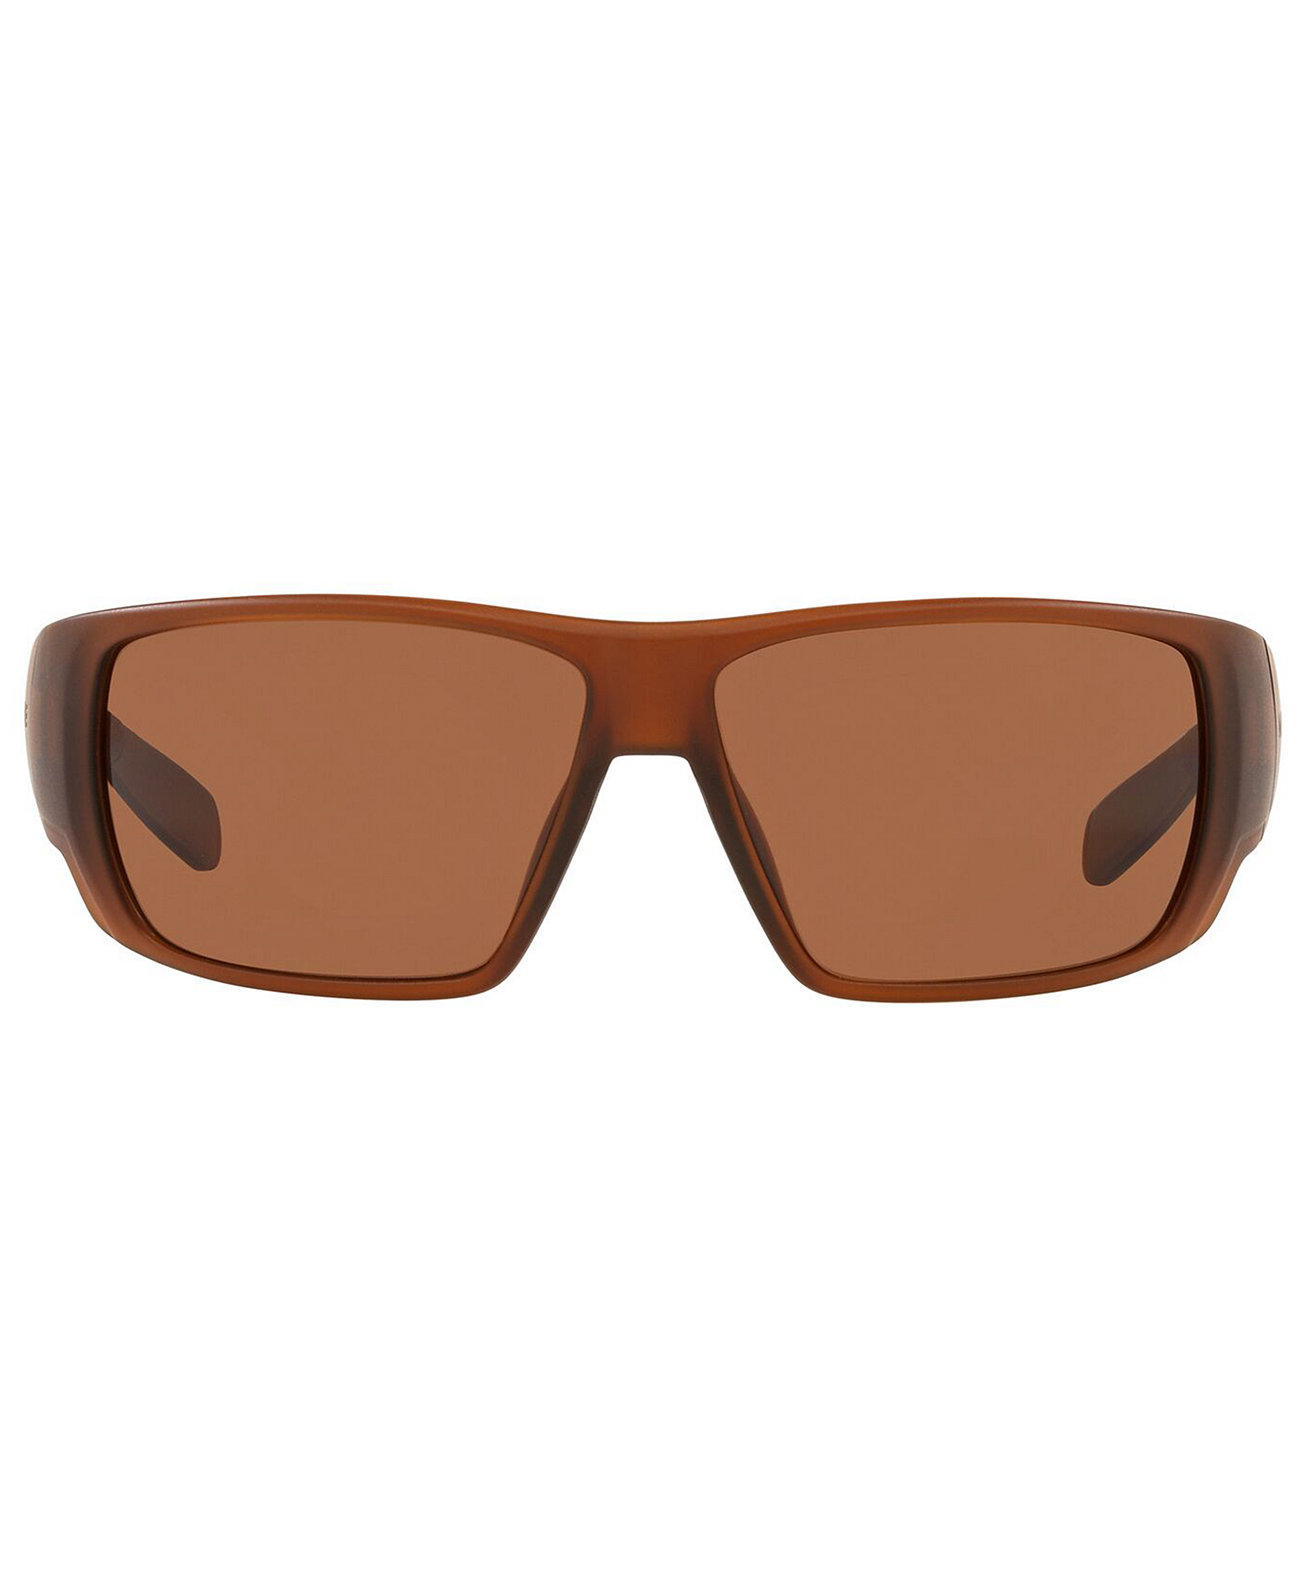 Мужские поляризованные солнцезащитные очки Native, XD0061 64 Native Eyewear